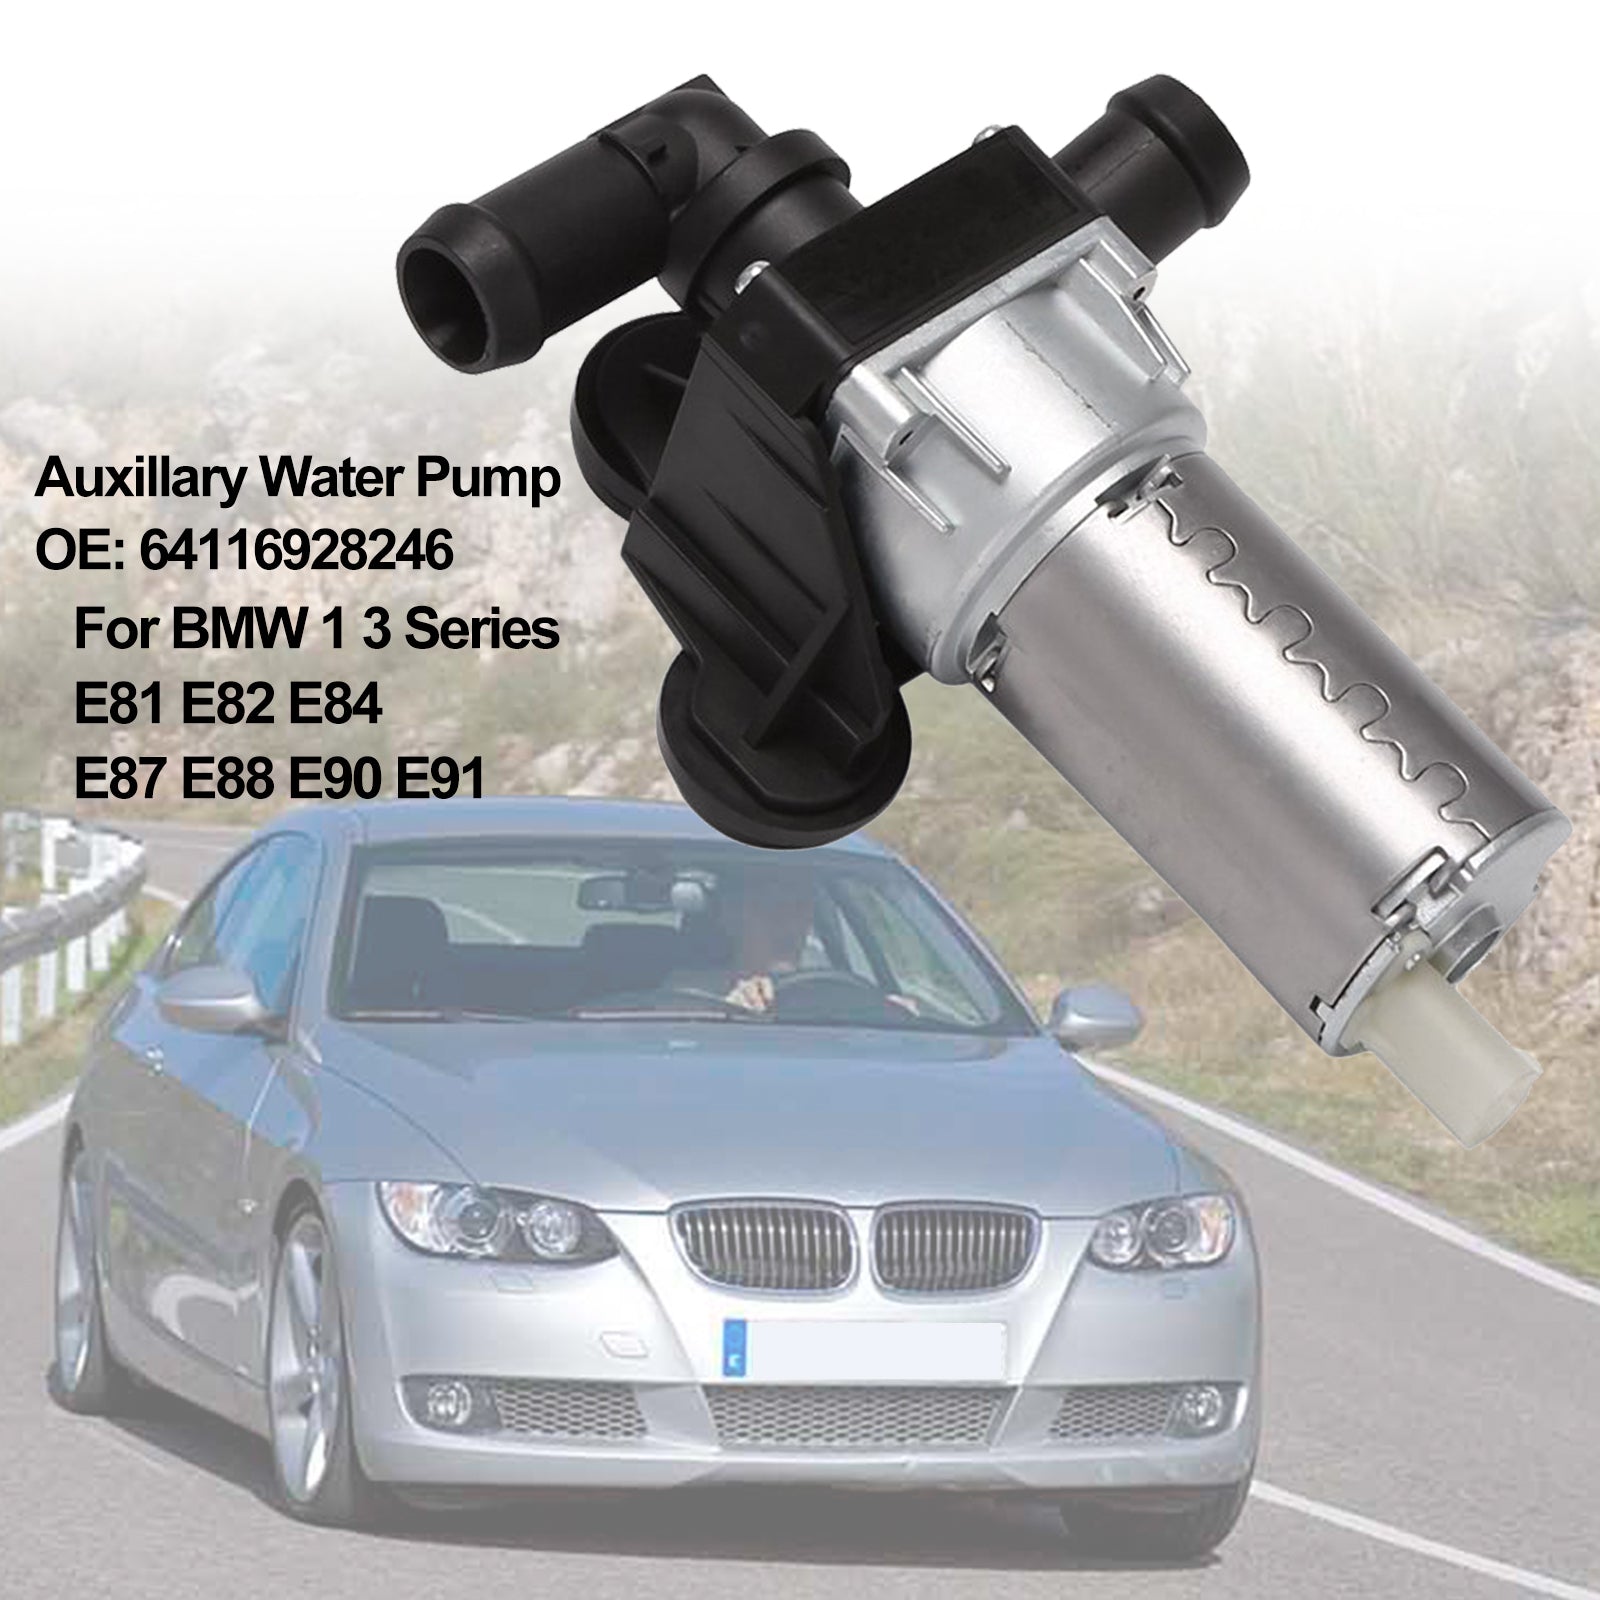 Pompa dell'acqua ausiliaria 64116928246 per BMW Serie 1 3 E81 E82 E84 E87 E88 E90 E91 Generico